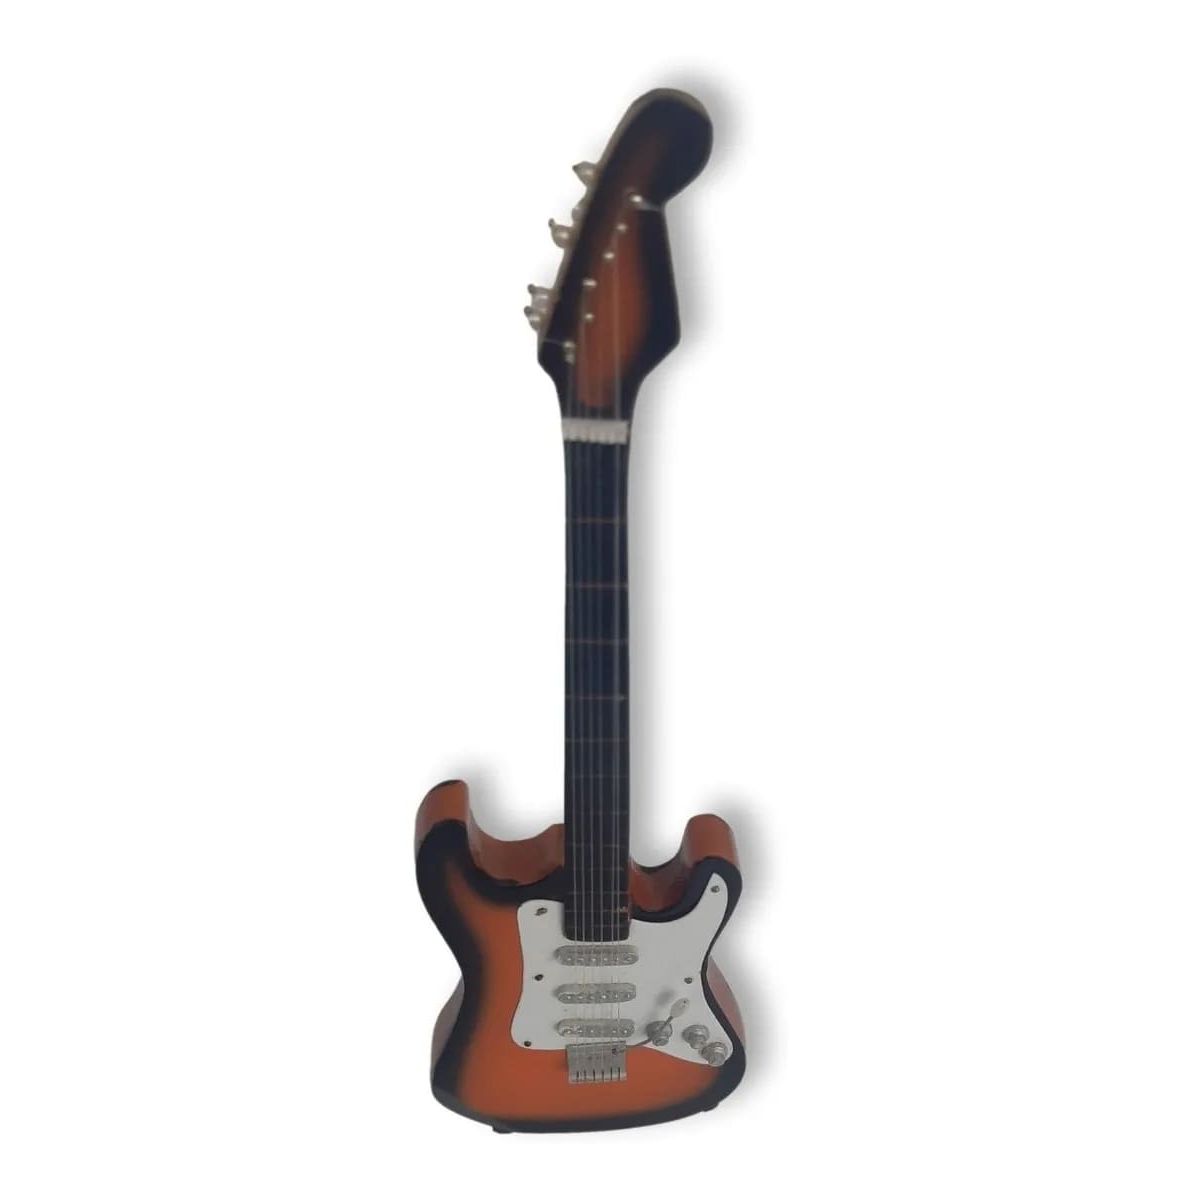 Guitarra Eléctrica Miniatura En Color Naranja